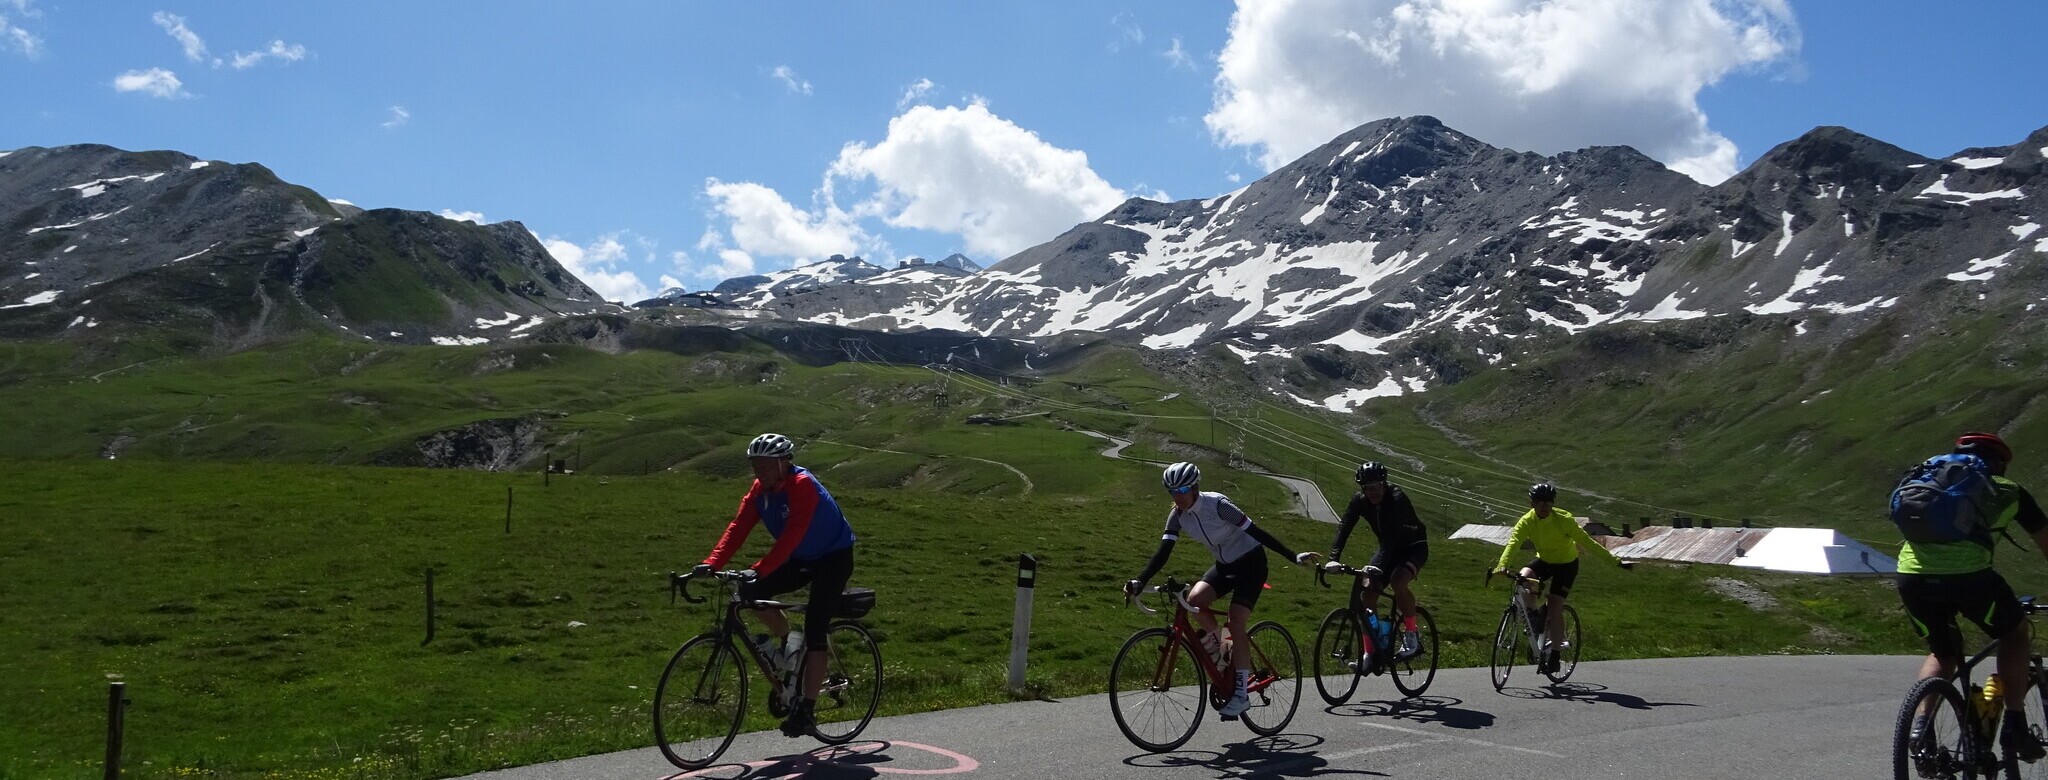 Rennrad, Pässe, Alpen, Pyrenäen, Touren, Schwarzwald, ... - quäldich.de -  Hauptsache bergauf für Rennradfahrer.